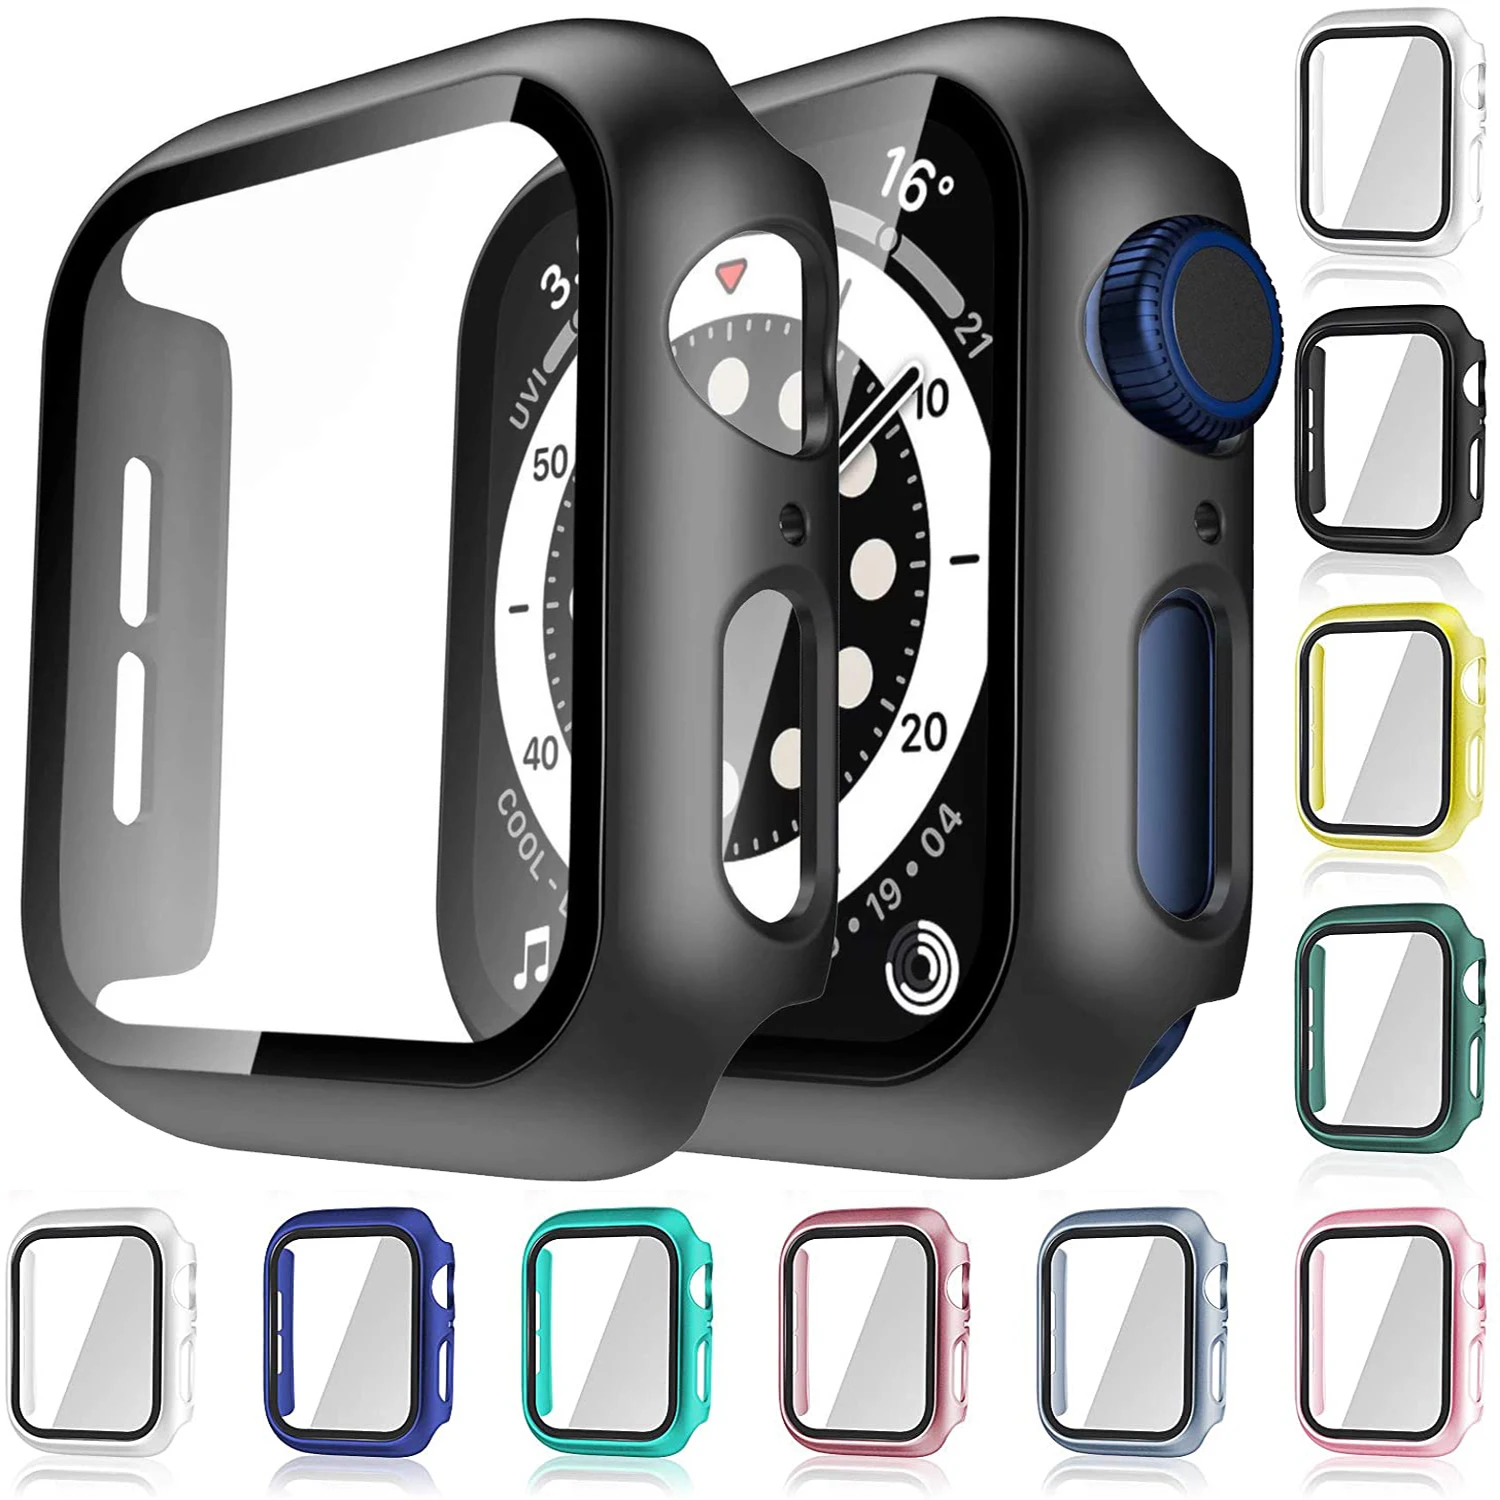 

Стекло + чехол для Apple Watch Серия 6 5 4 3 2 1 SE 44 мм 40 мм чехол для iWatch 42 мм 38 мм защита для экрана бампера + чехол для телефона